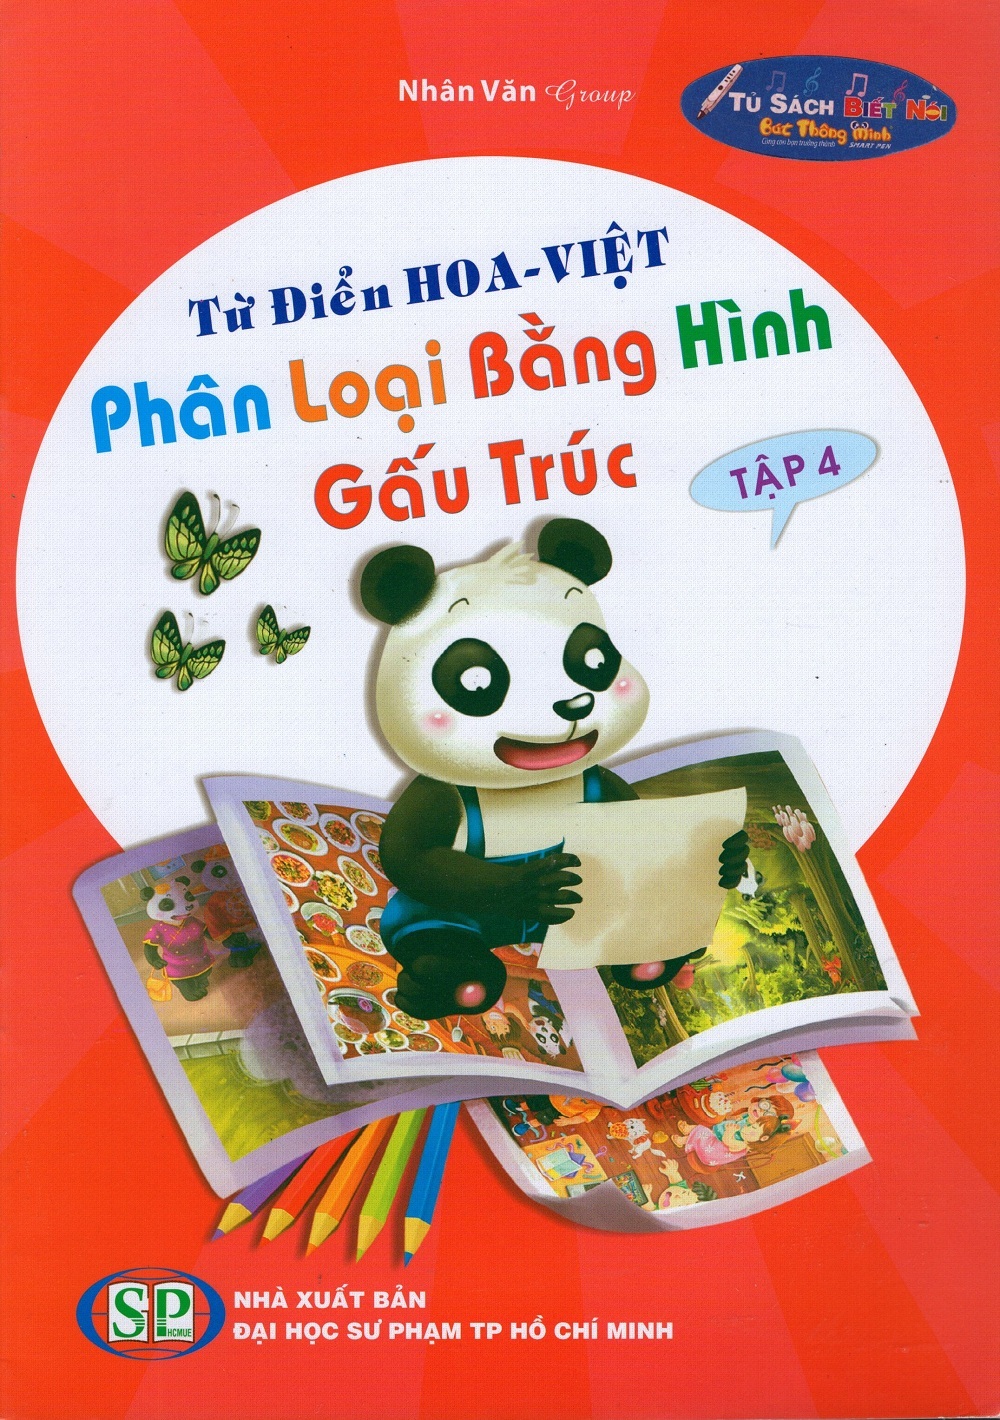 Từ điển Hoa - Việt phân loại bằng hình gấu trúc tập 4